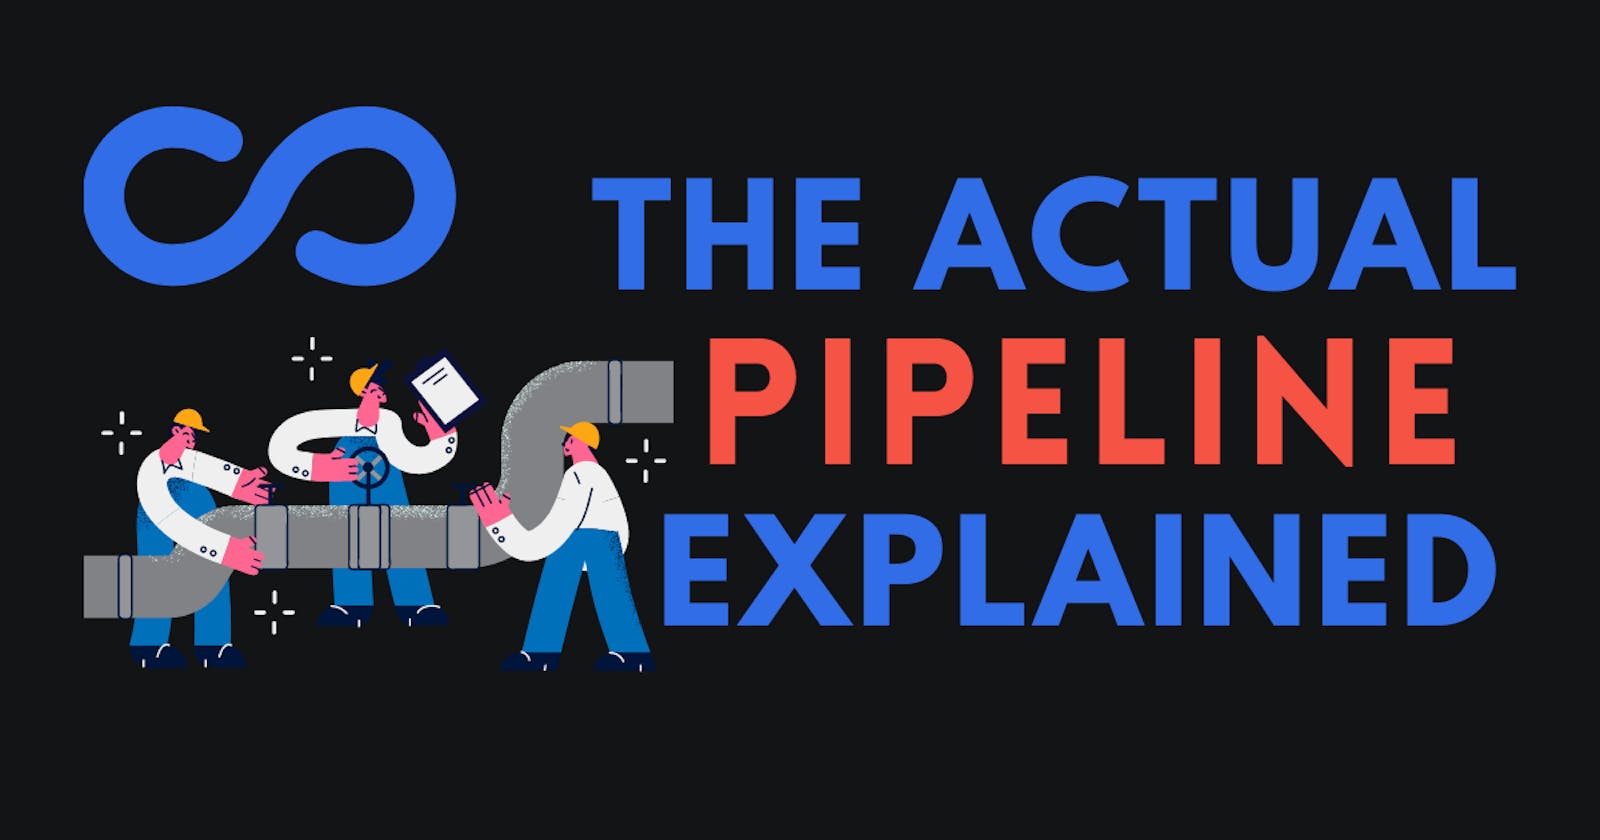 Let's Explain a Pipeline